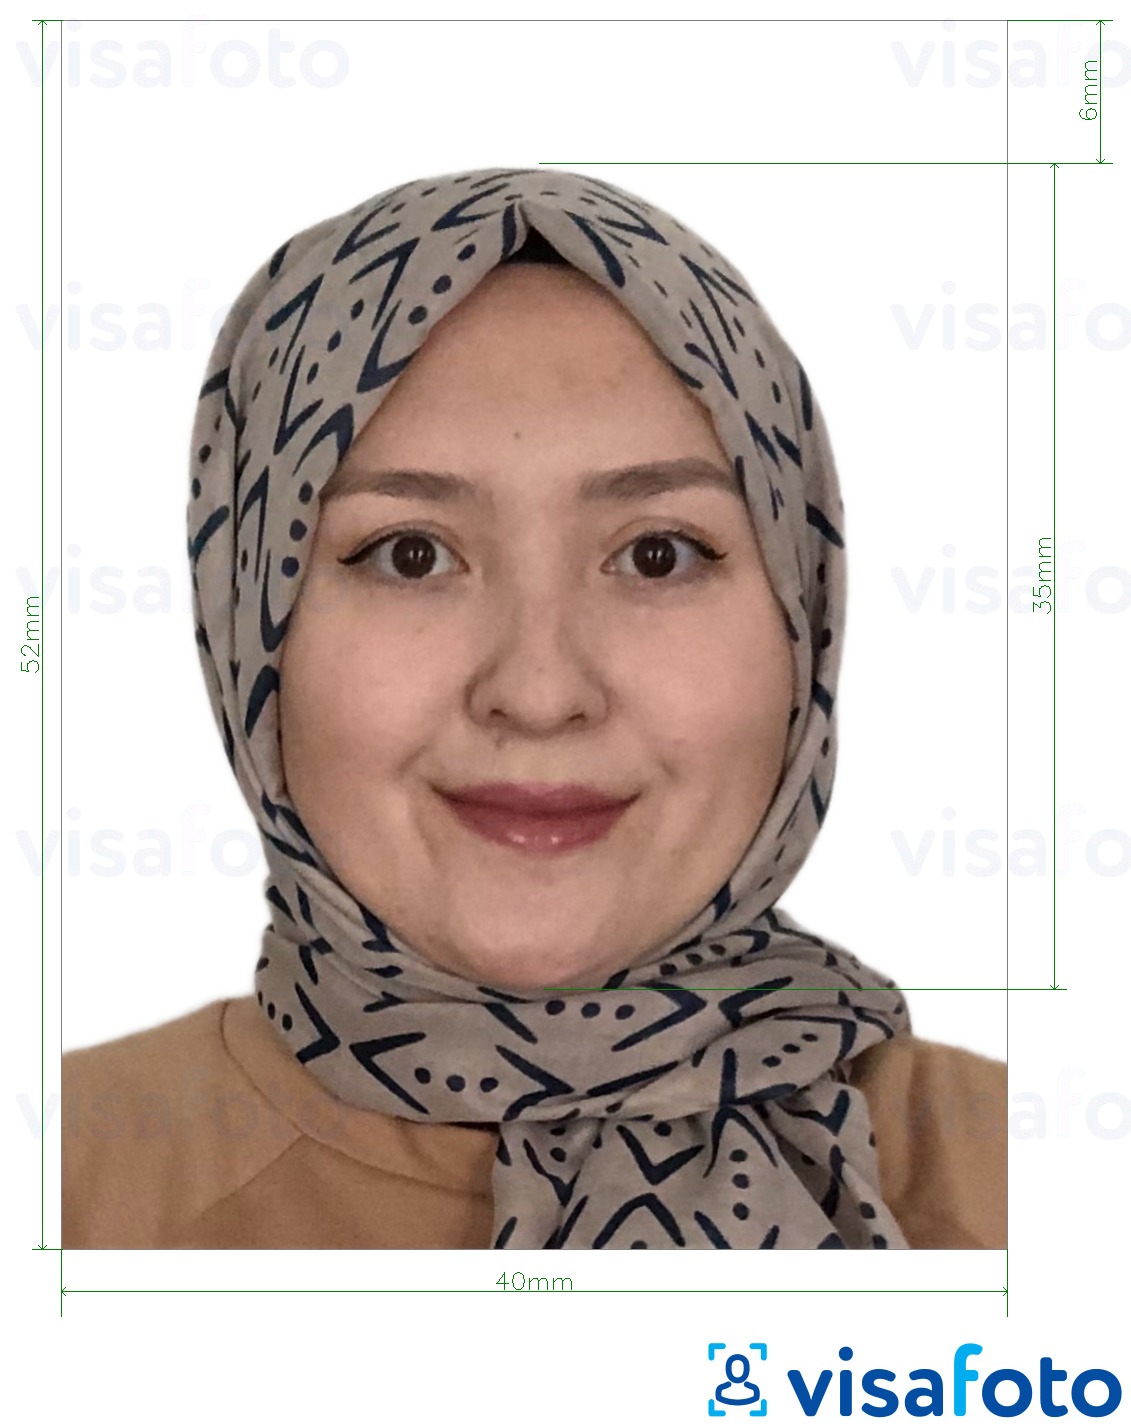 Halimbawa ng larawan para sa Brunei passport 5.2x4 cm (52x40 mm) na may eksaktong sukat na detalye